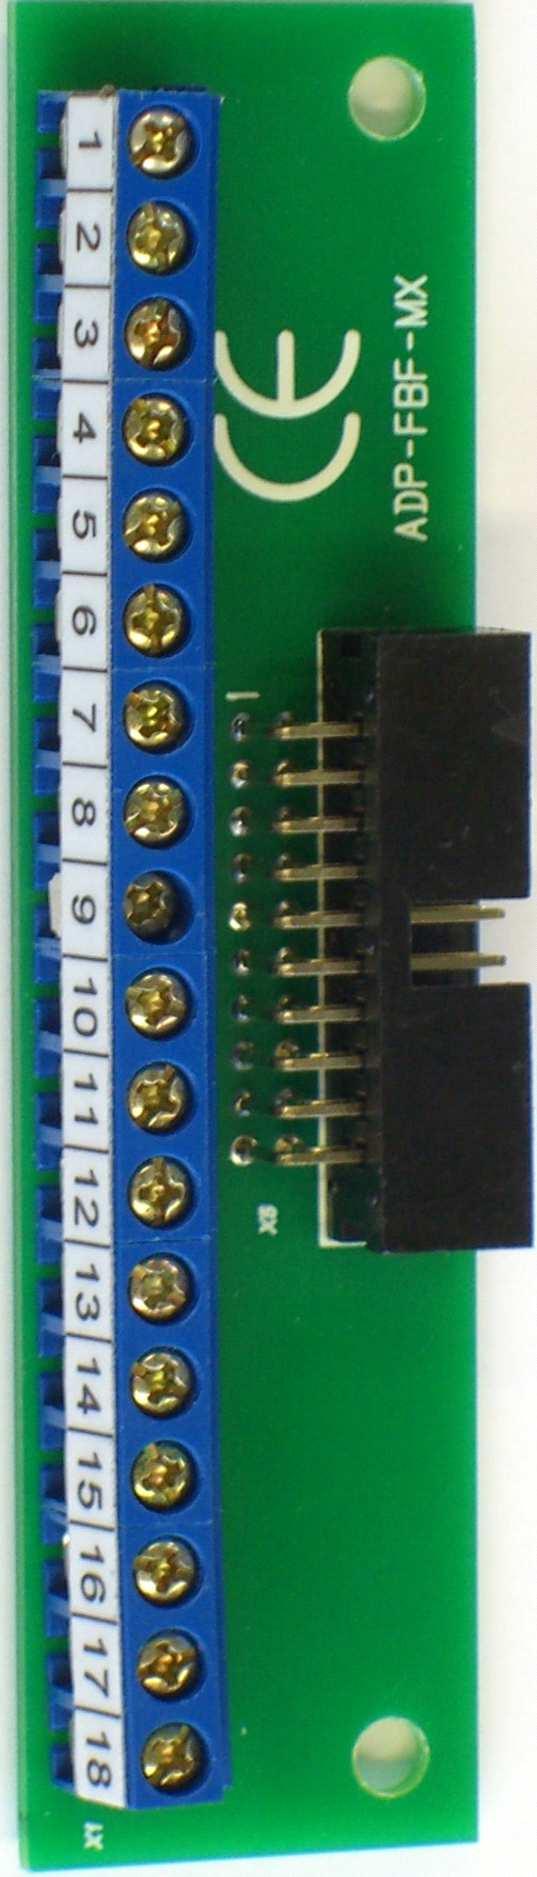 FAT000 / FBF-seriell Anschaltungen an Minimax I F A M. Ankopplung FBF-Interface über Adapter ADP-FBF-MX Das parallele FBF-Interface in der BMZ ist als 0-poliger Flachbandstecker ausgeführt.